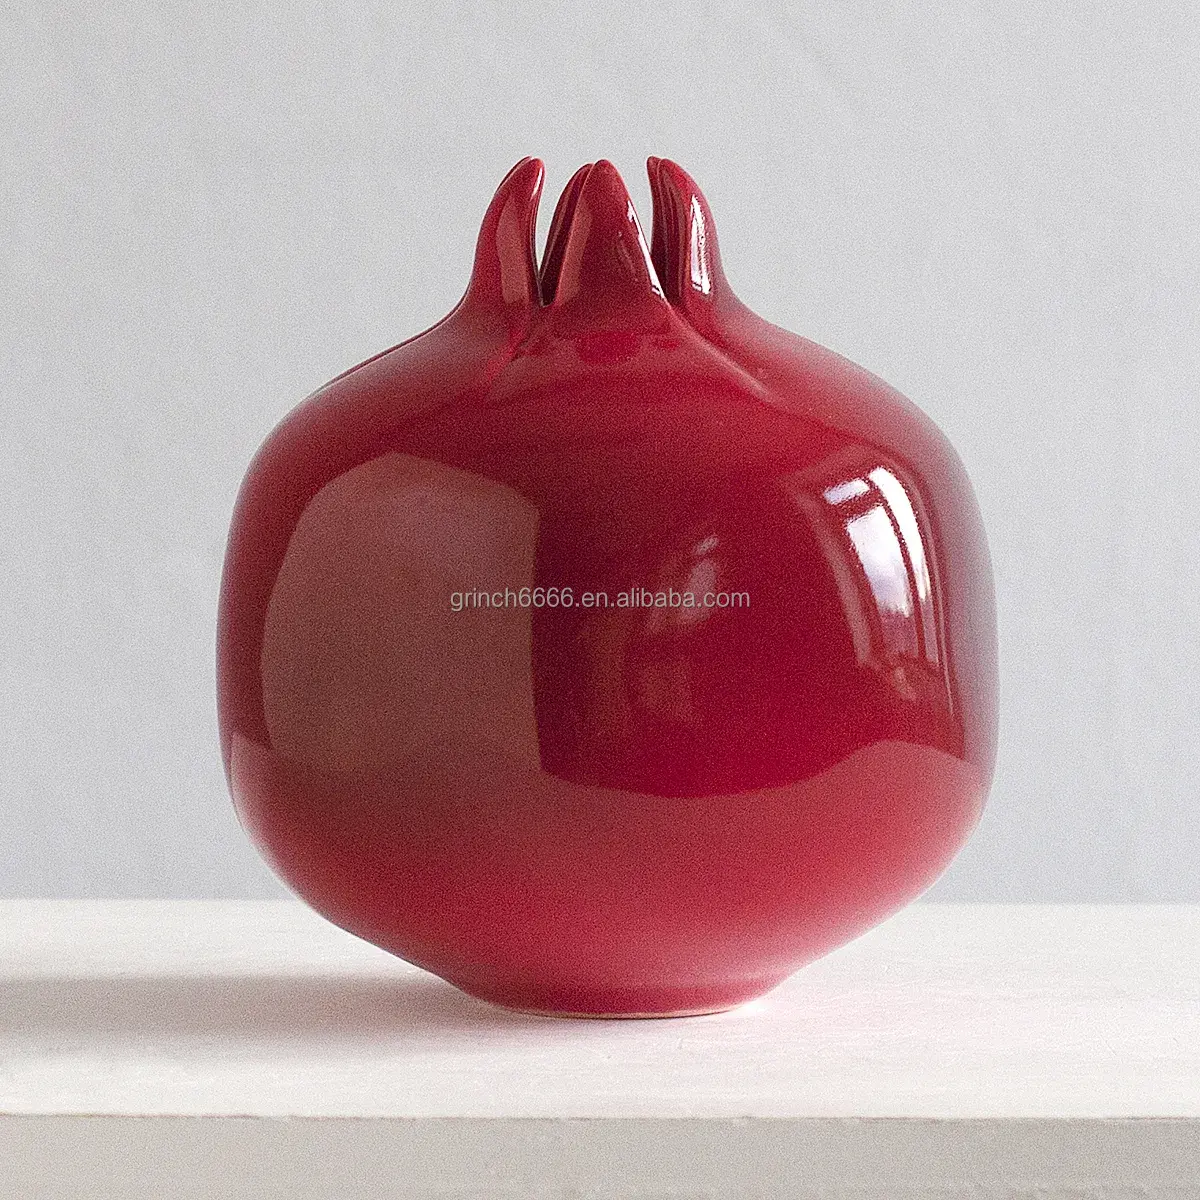 Статуэтка керамическая гранатовая красная керамическая ваза декоративная ручная роспись керамический гранат тройной набор